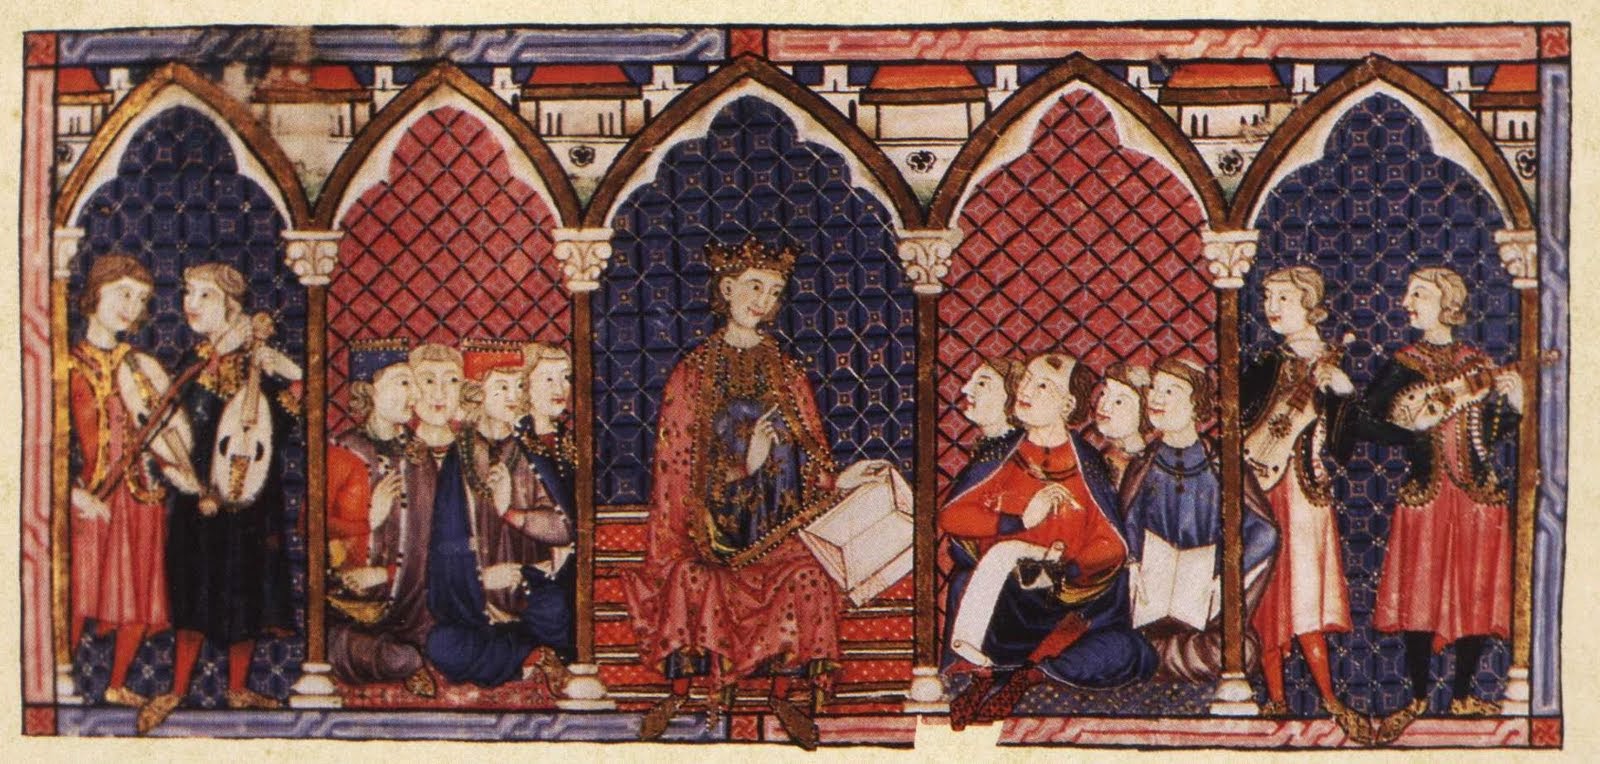 Afonso X, o Sábio, com a sua corte poética-musical